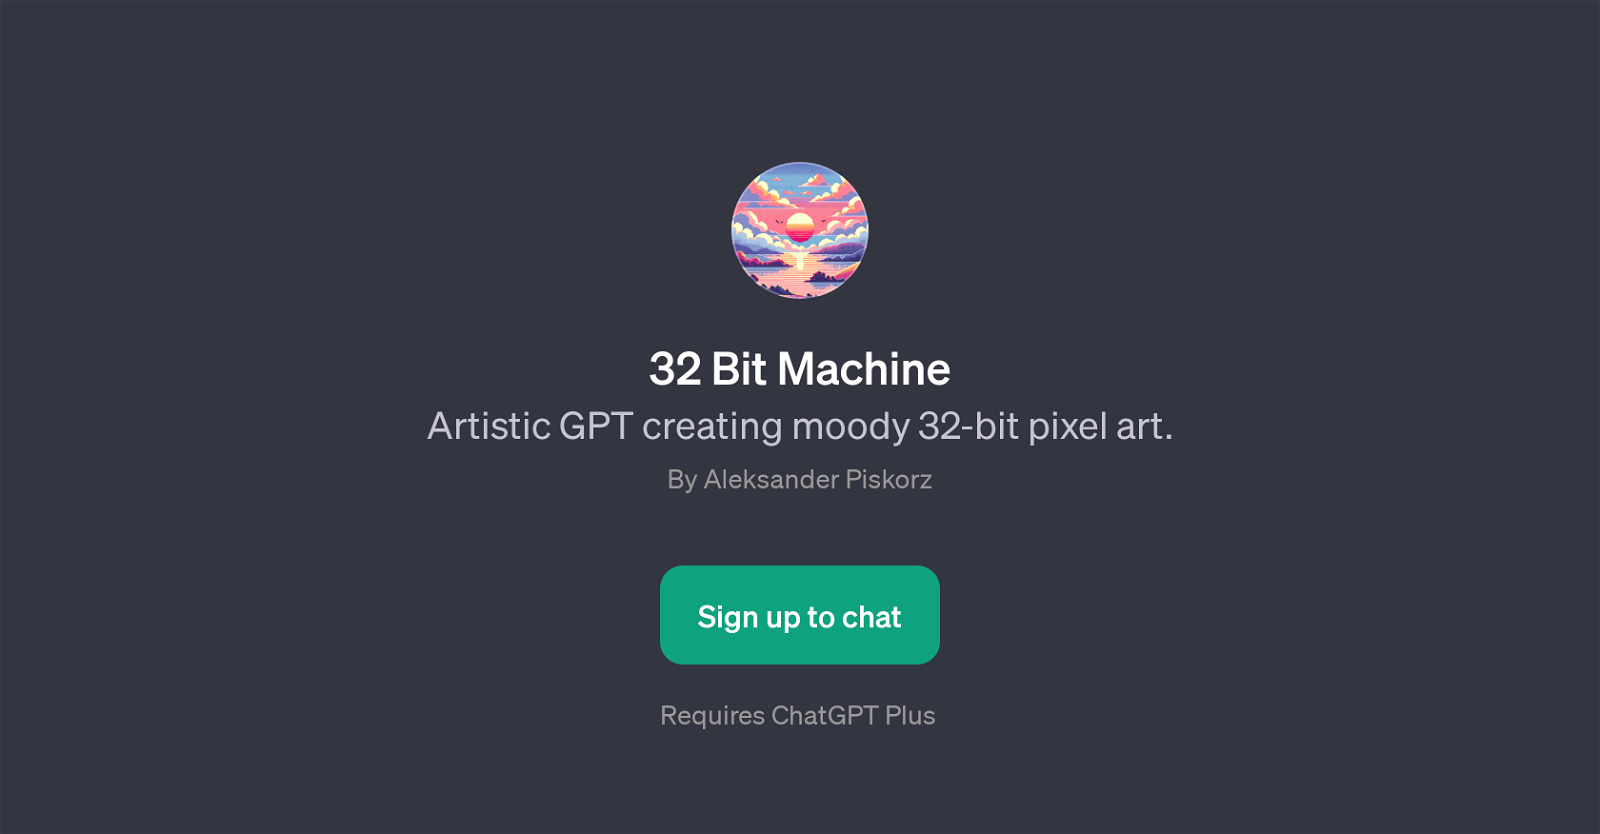 32 Bit Machine website